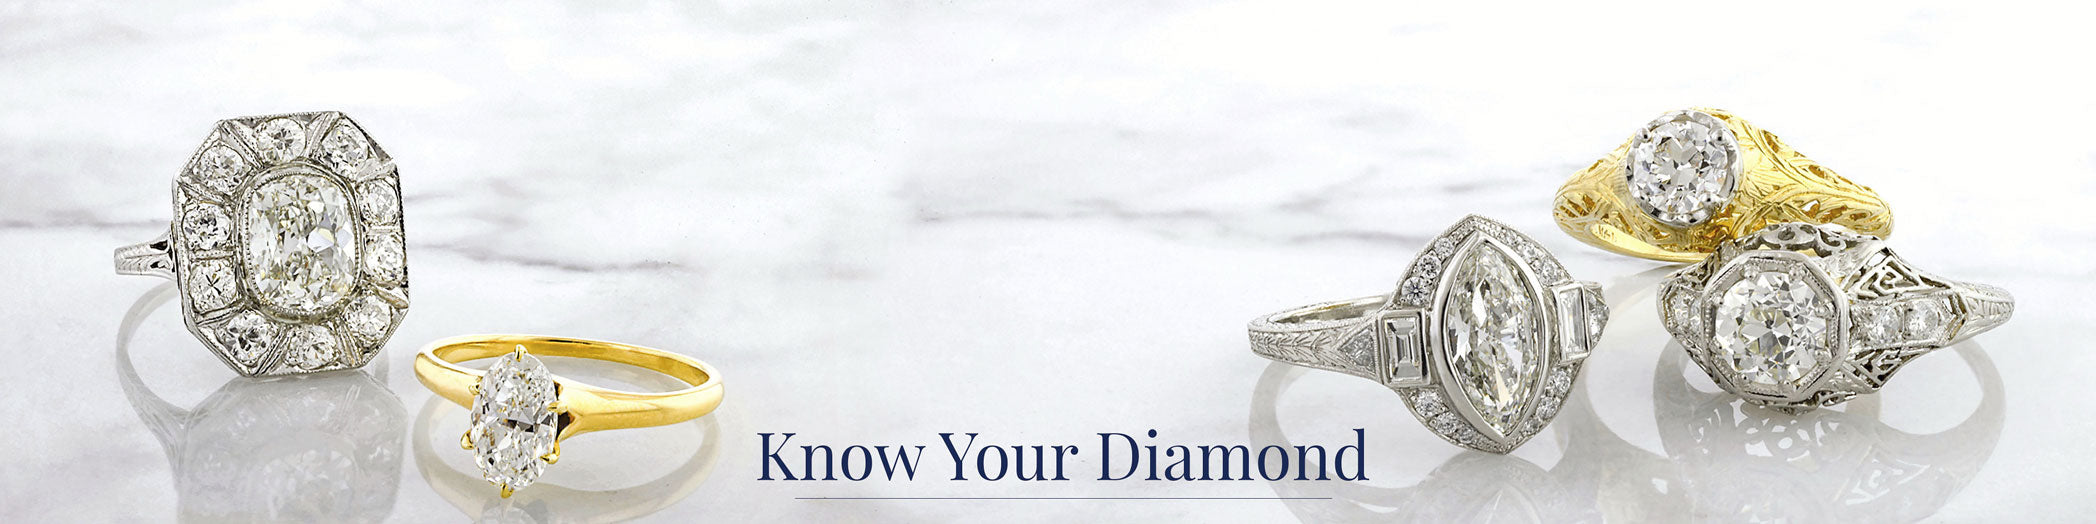 Know Your Diamond